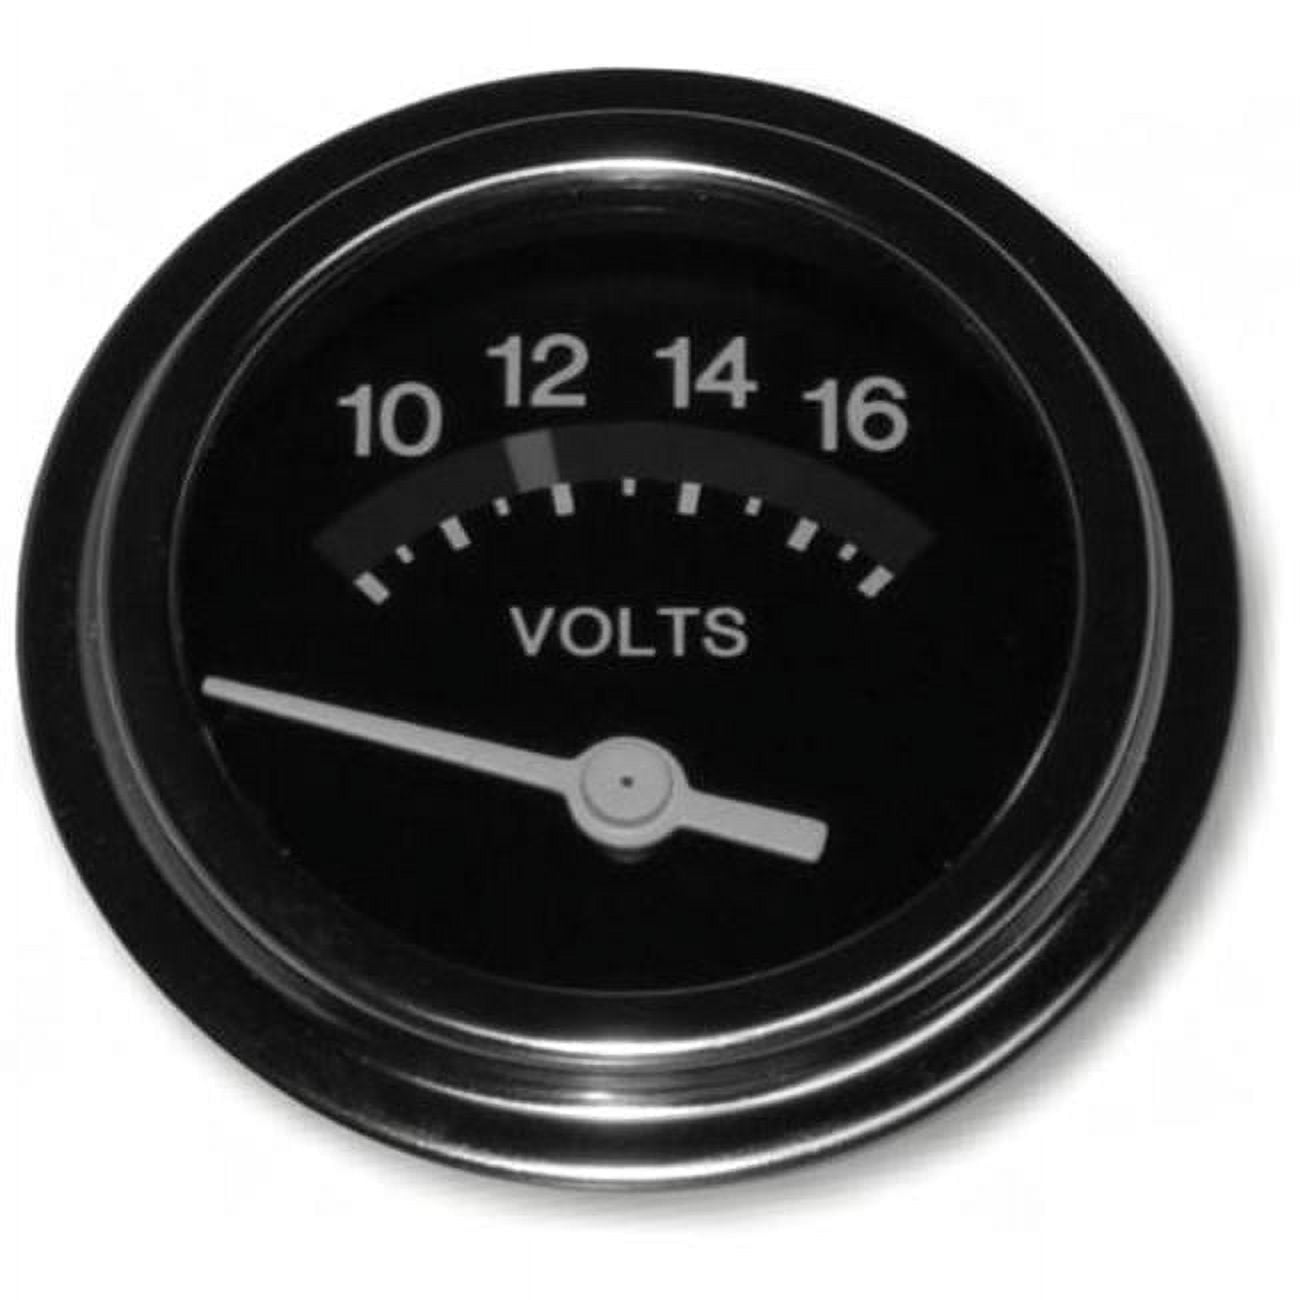 Picture of 12 Volt Dc Voltmeter - 10-16 Volts (4X4 Vehicles)